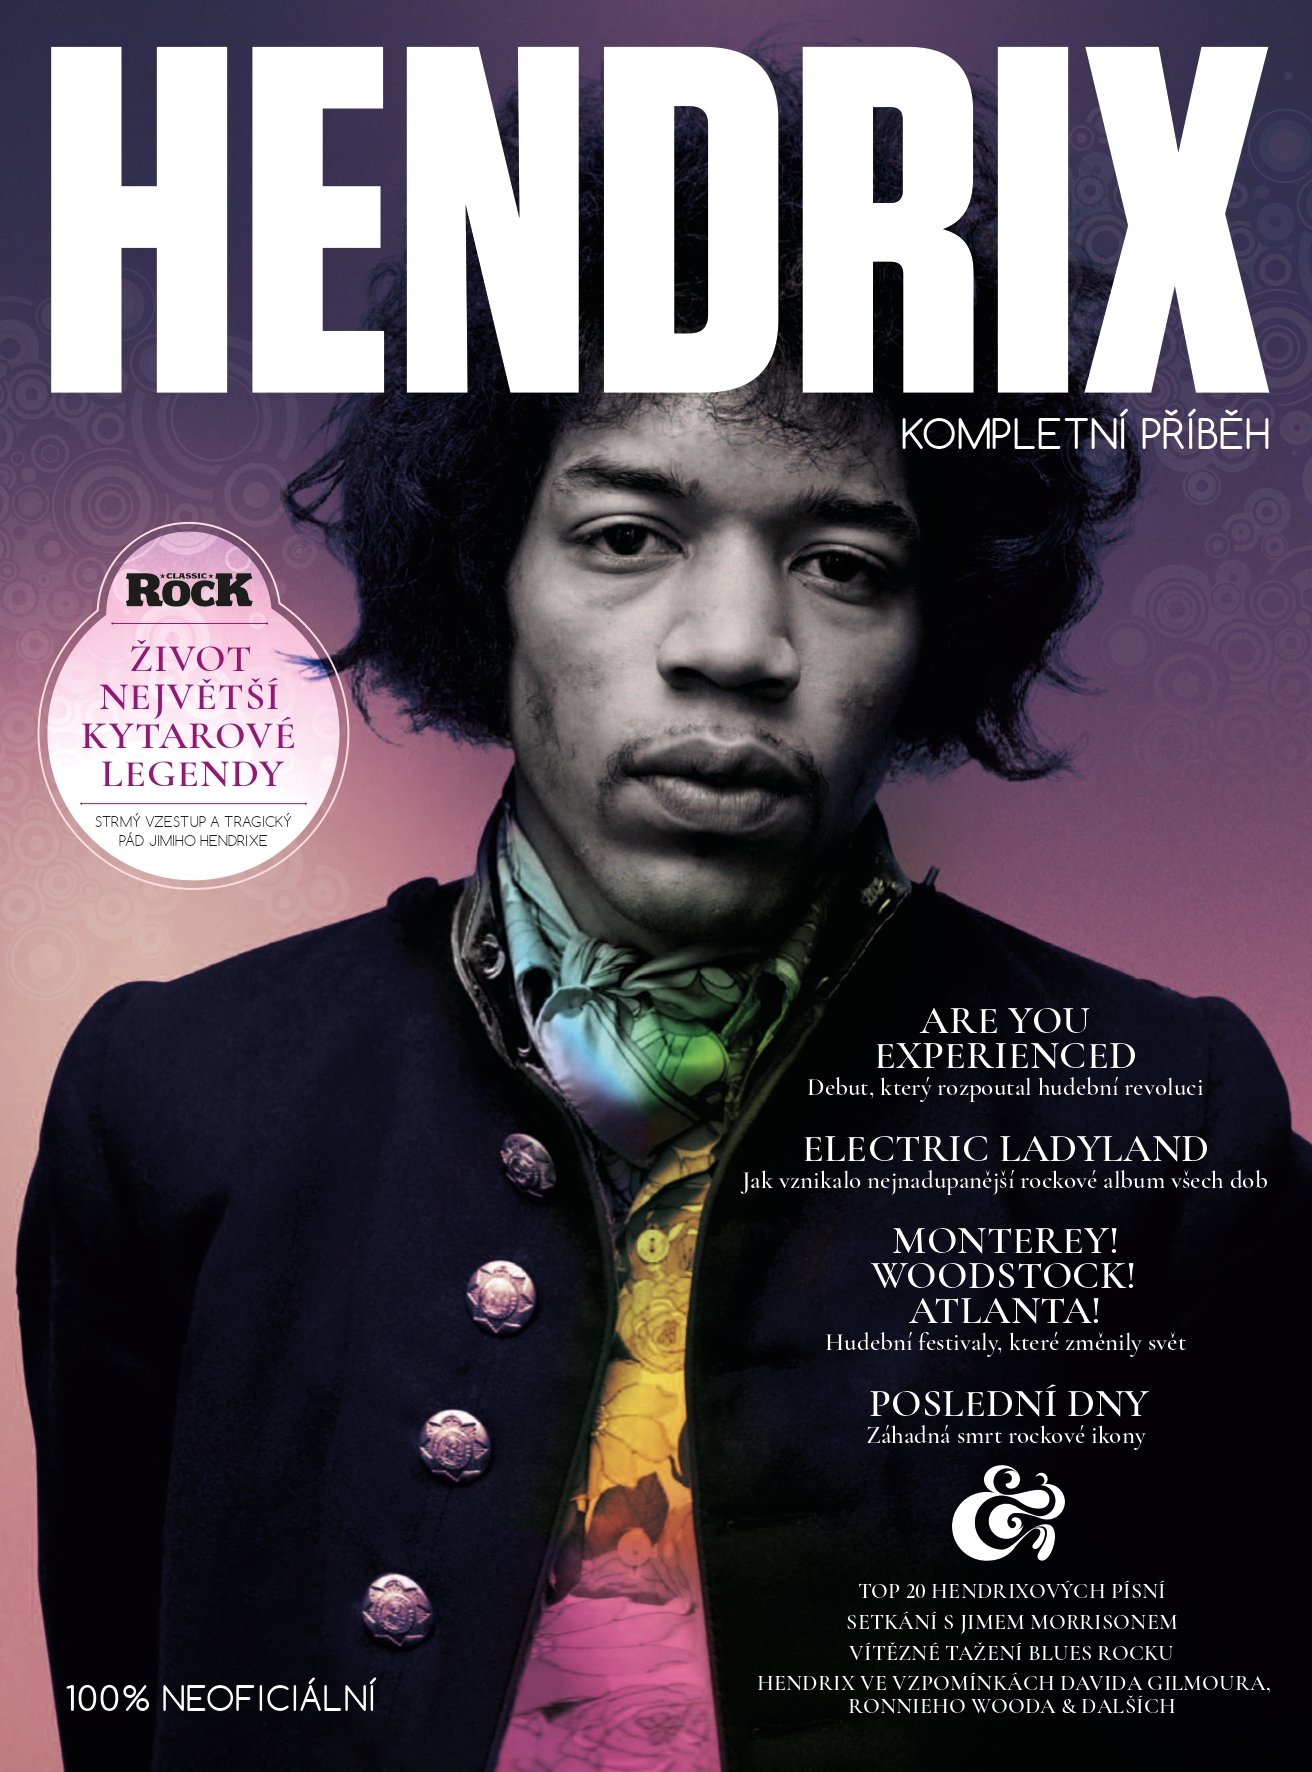 Hendrix - Kompletní příběh - kolektiv autorů